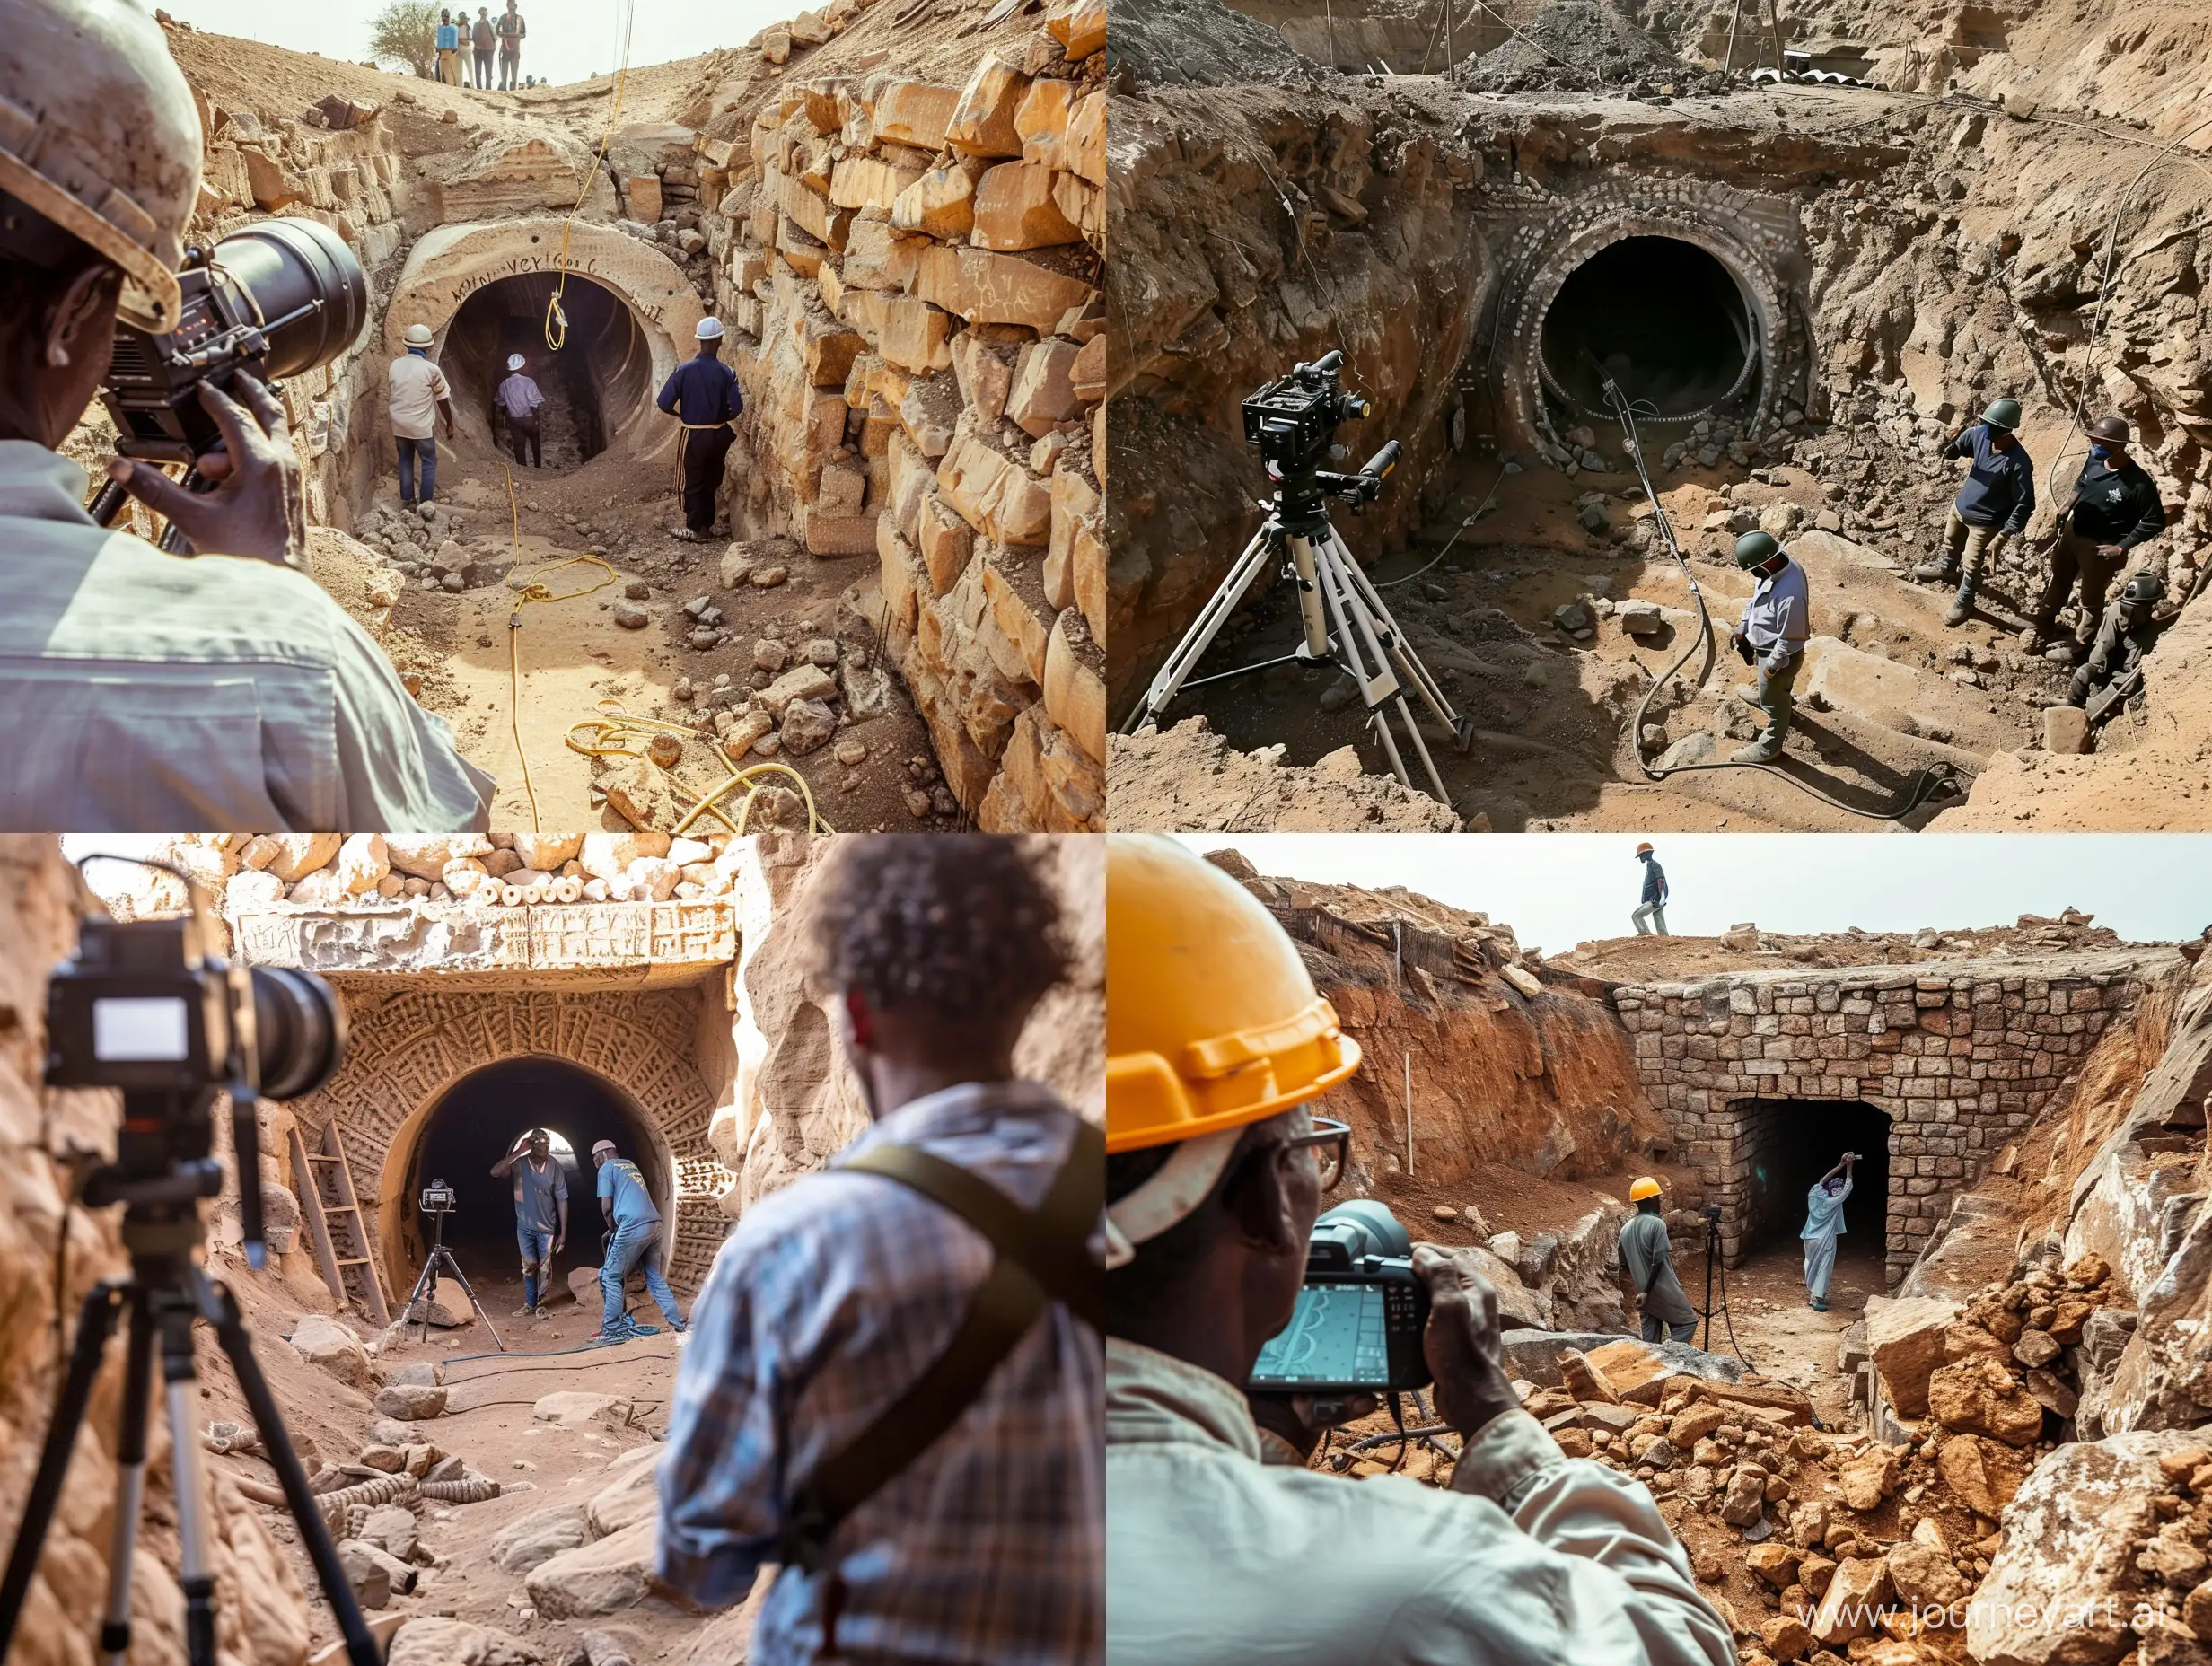 фотография, документальная съемка, на раскопках в африке нашли туннель, древняя технология, на фото видны рабочие ведущие раскопки